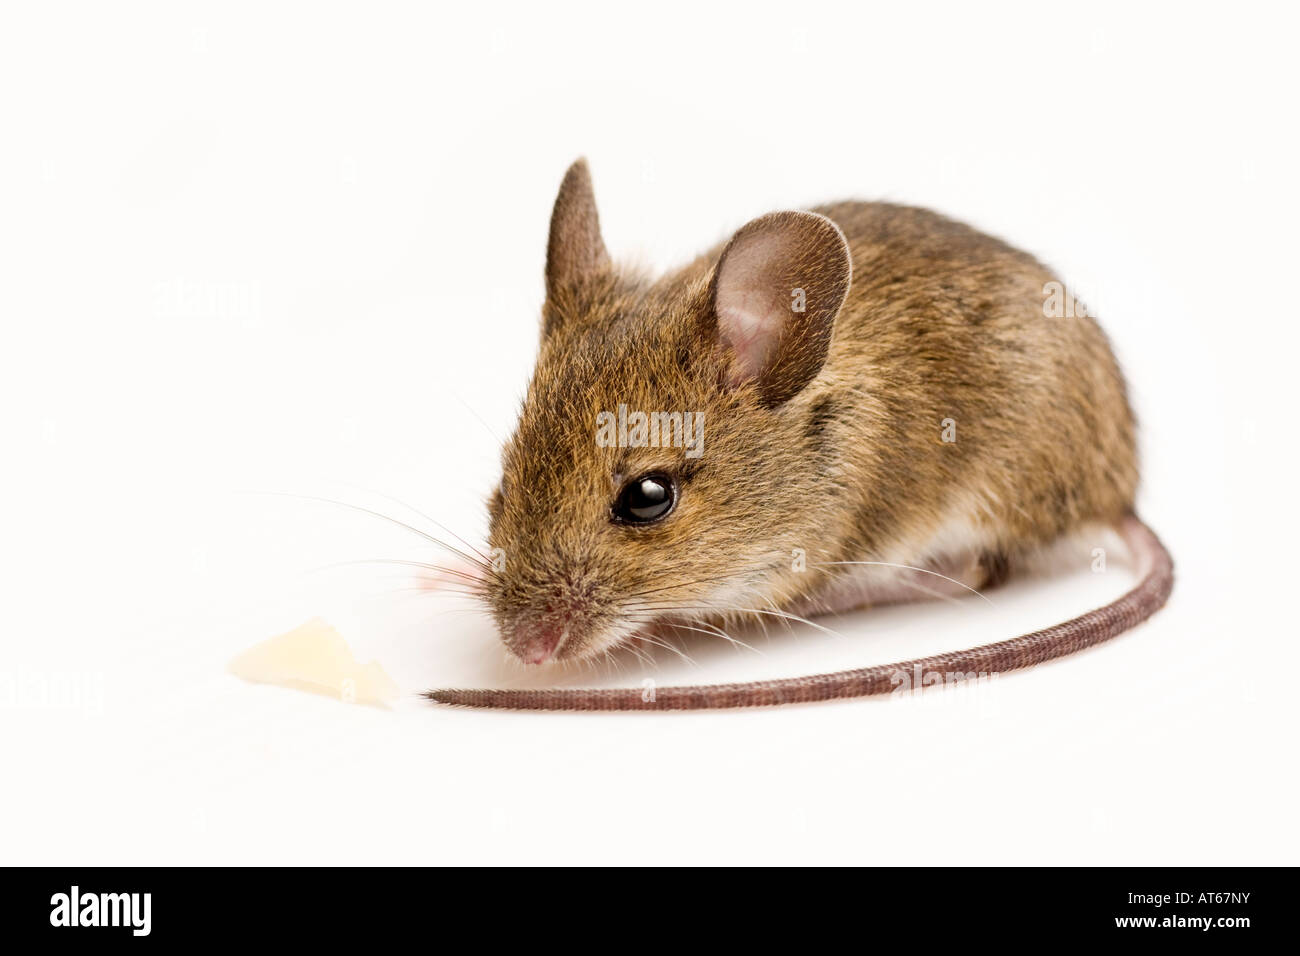 Apodemus sylvaticus, legno mouse, Long-tailed il mouse sul campo Foto Stock